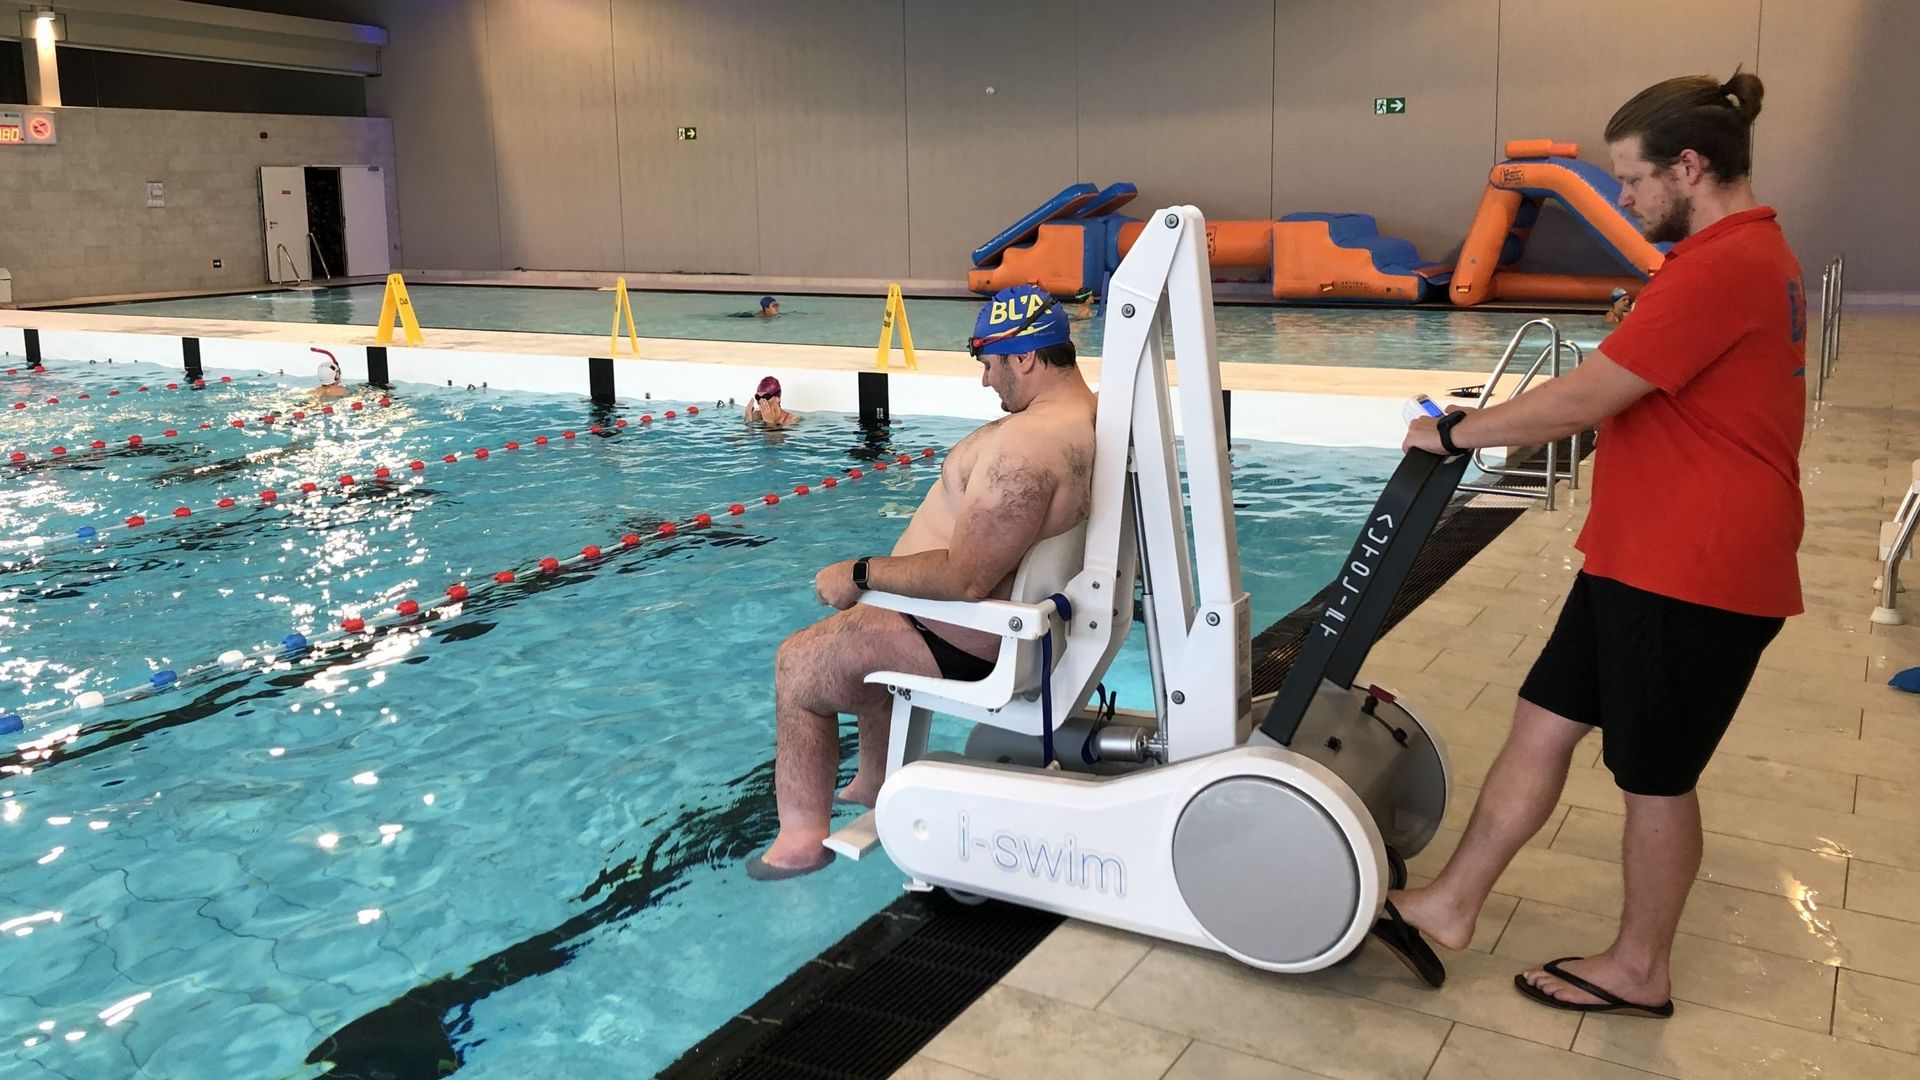 Pour Sébastien Xrhouet, ancien champion paralympique, cet équipement qui permet d’entrer et de sortir de l’eau n’est pas utile qu’aux seuls porteurs de handicap.